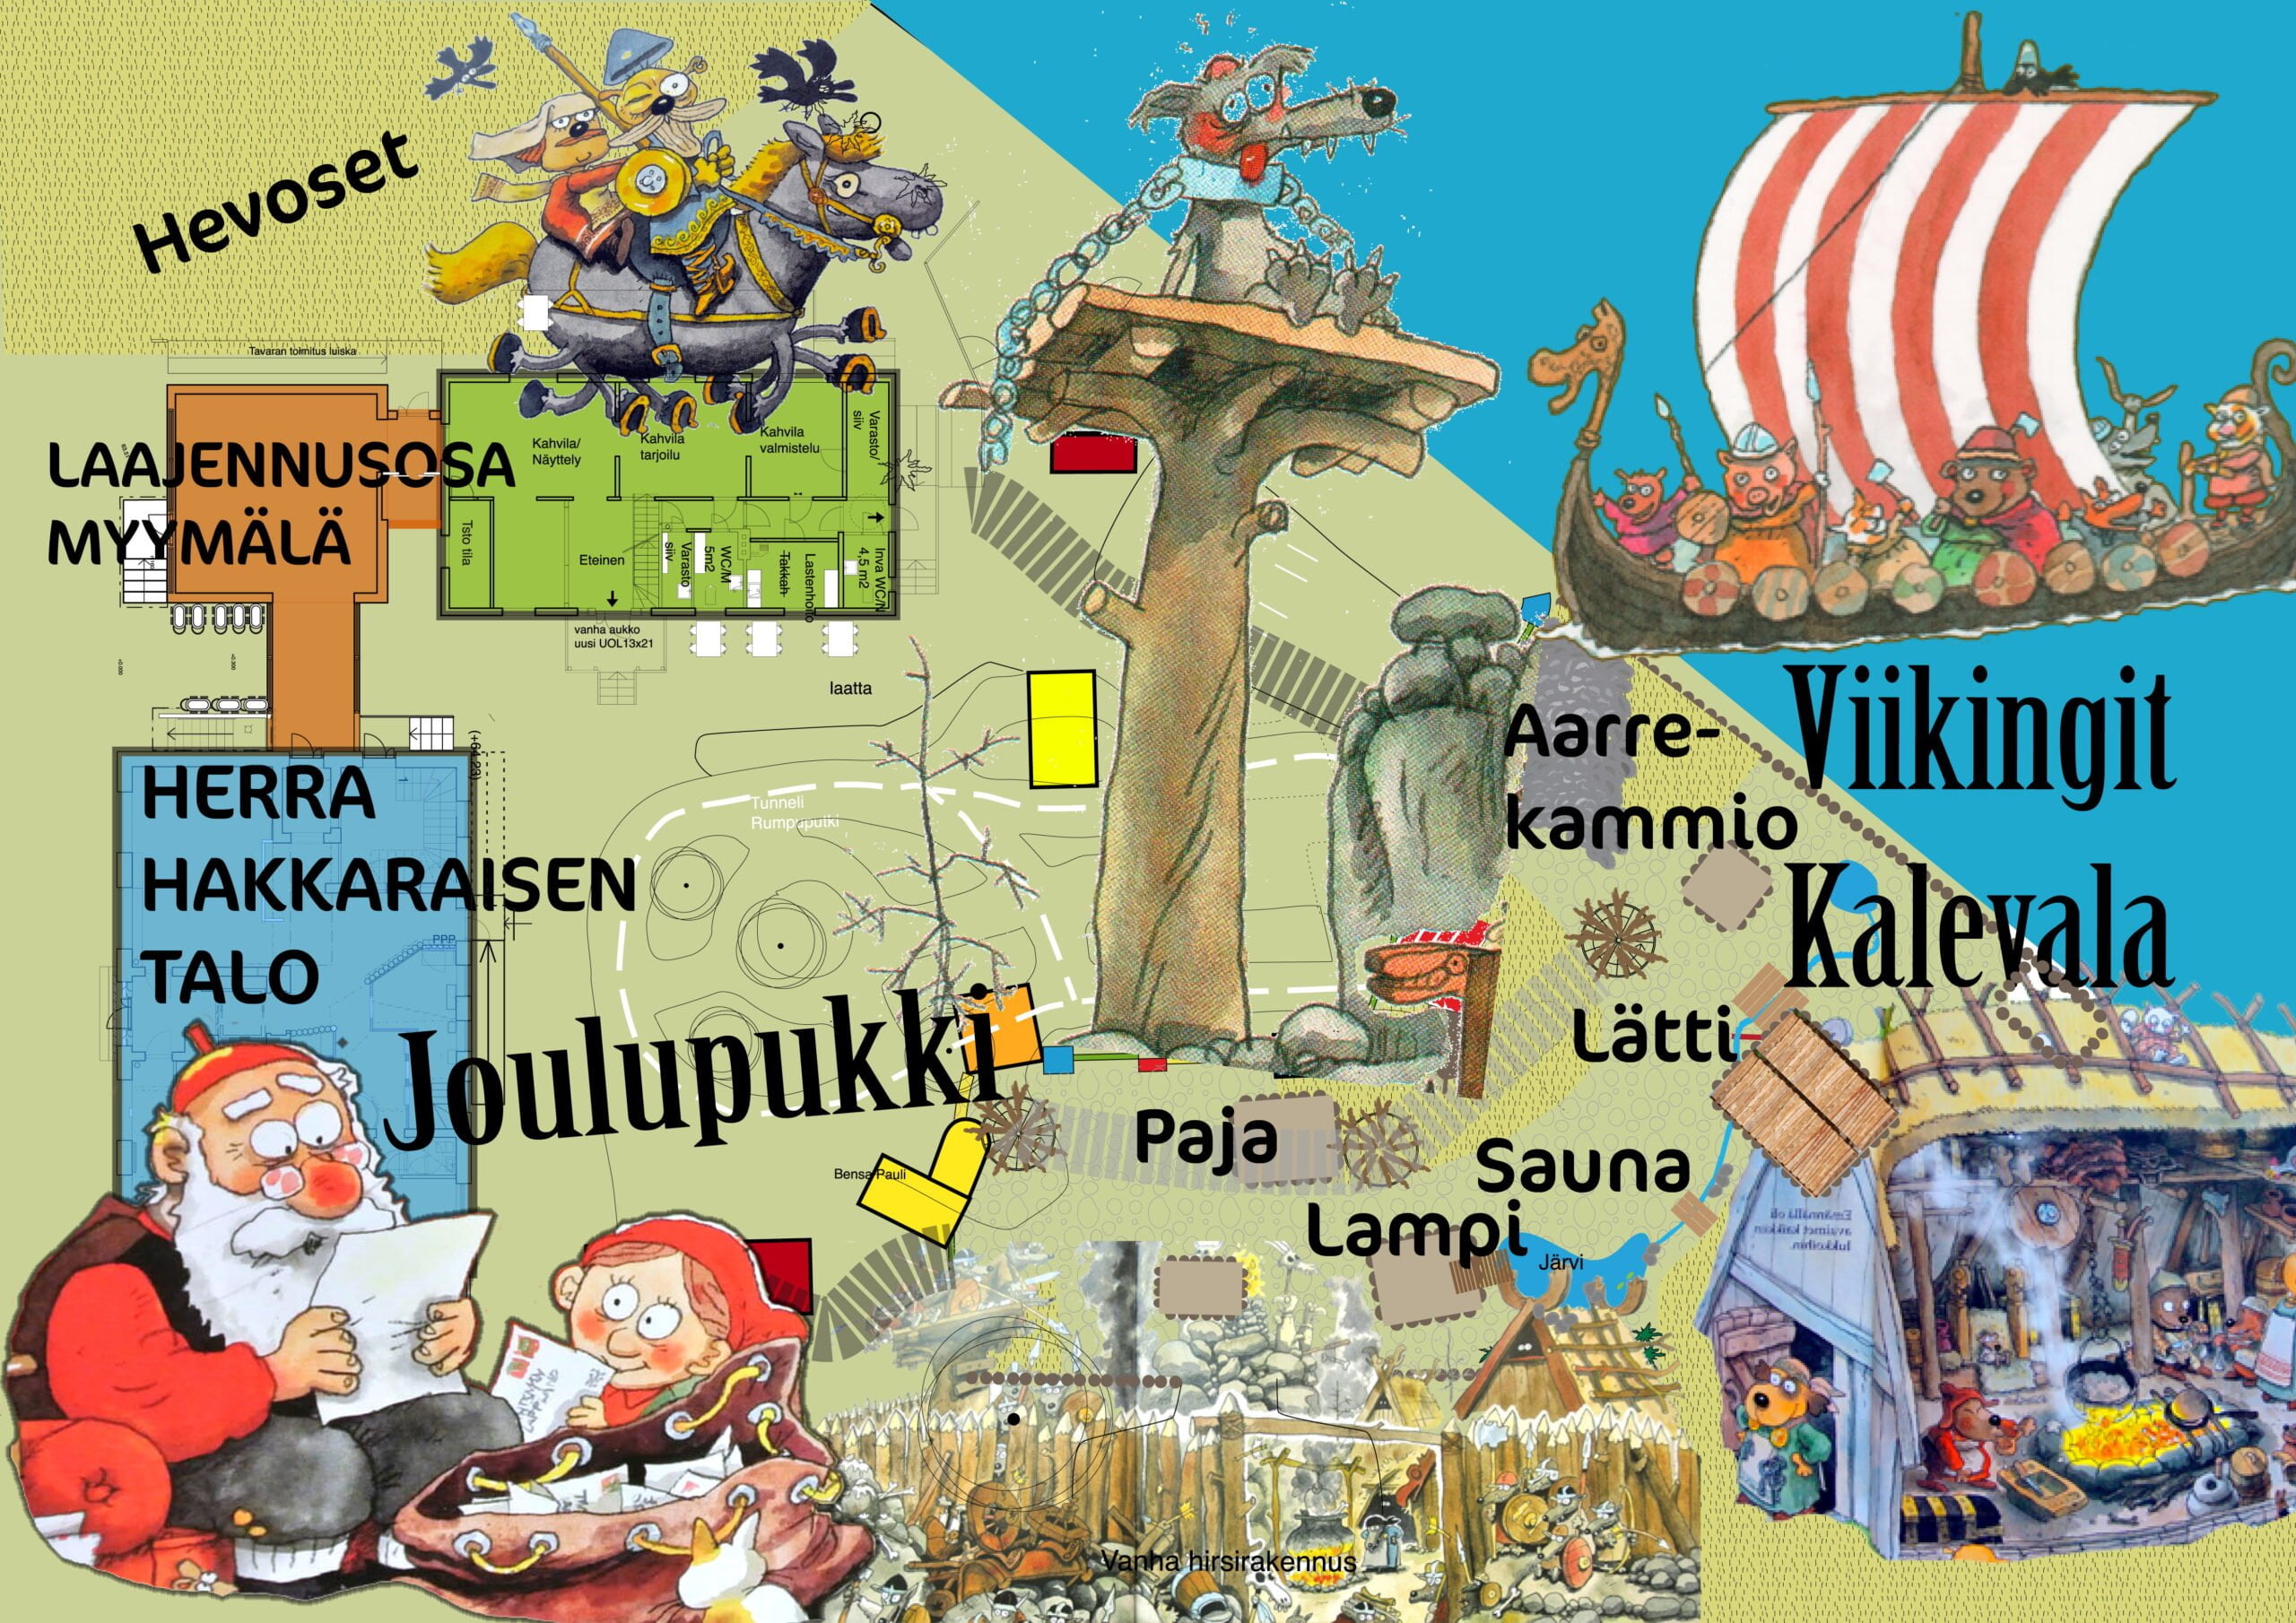 Suunnitelma: Herra Hakkaraisen taloon Korvatunturi ja pihalle  Viikinki-Kalevala - Alueviesti